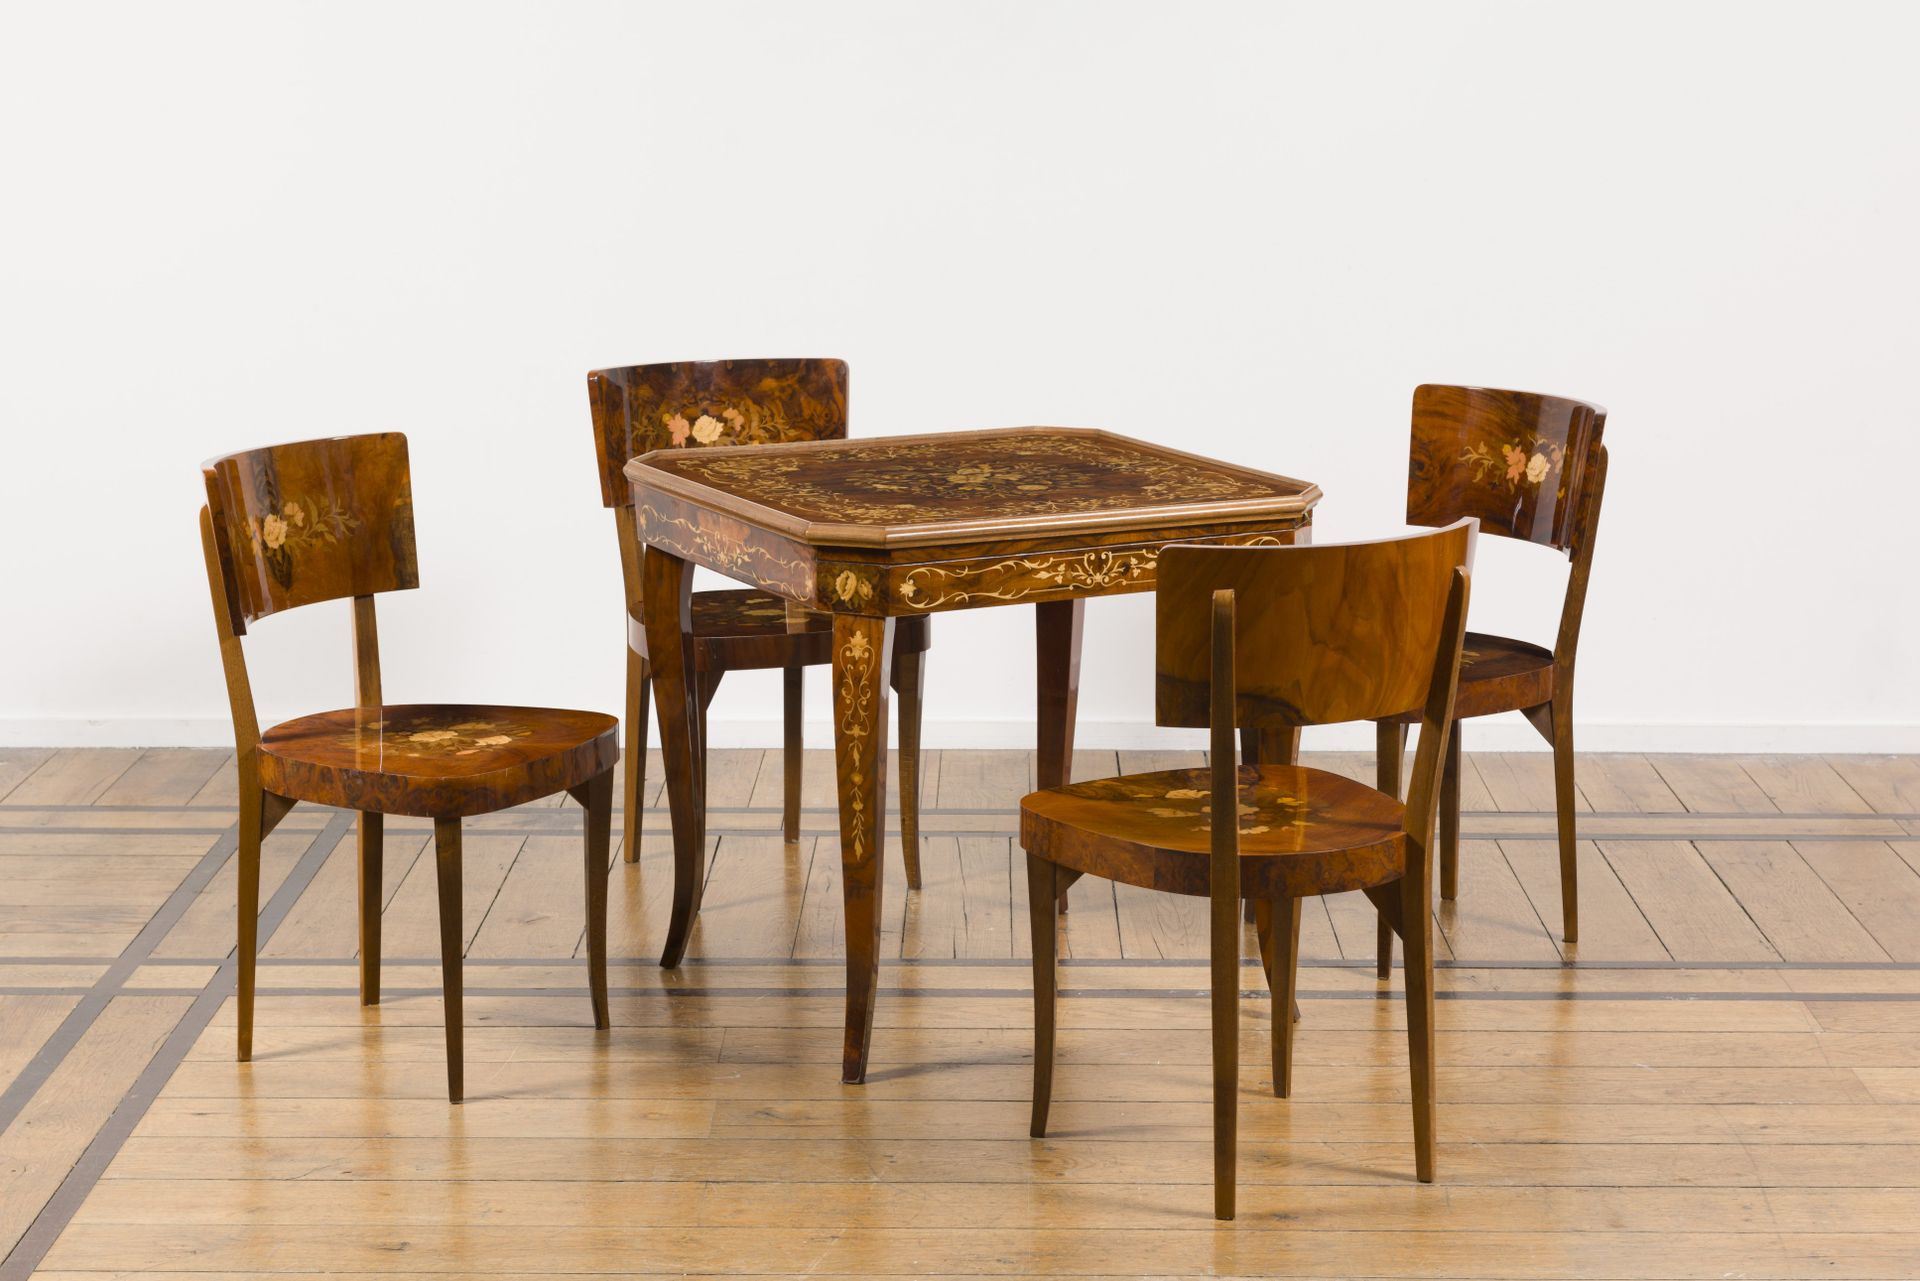 Null Spieltisch mit vier Stühlen aus Holz und Intarsien, circa 1990

Die Tischpl&hellip;